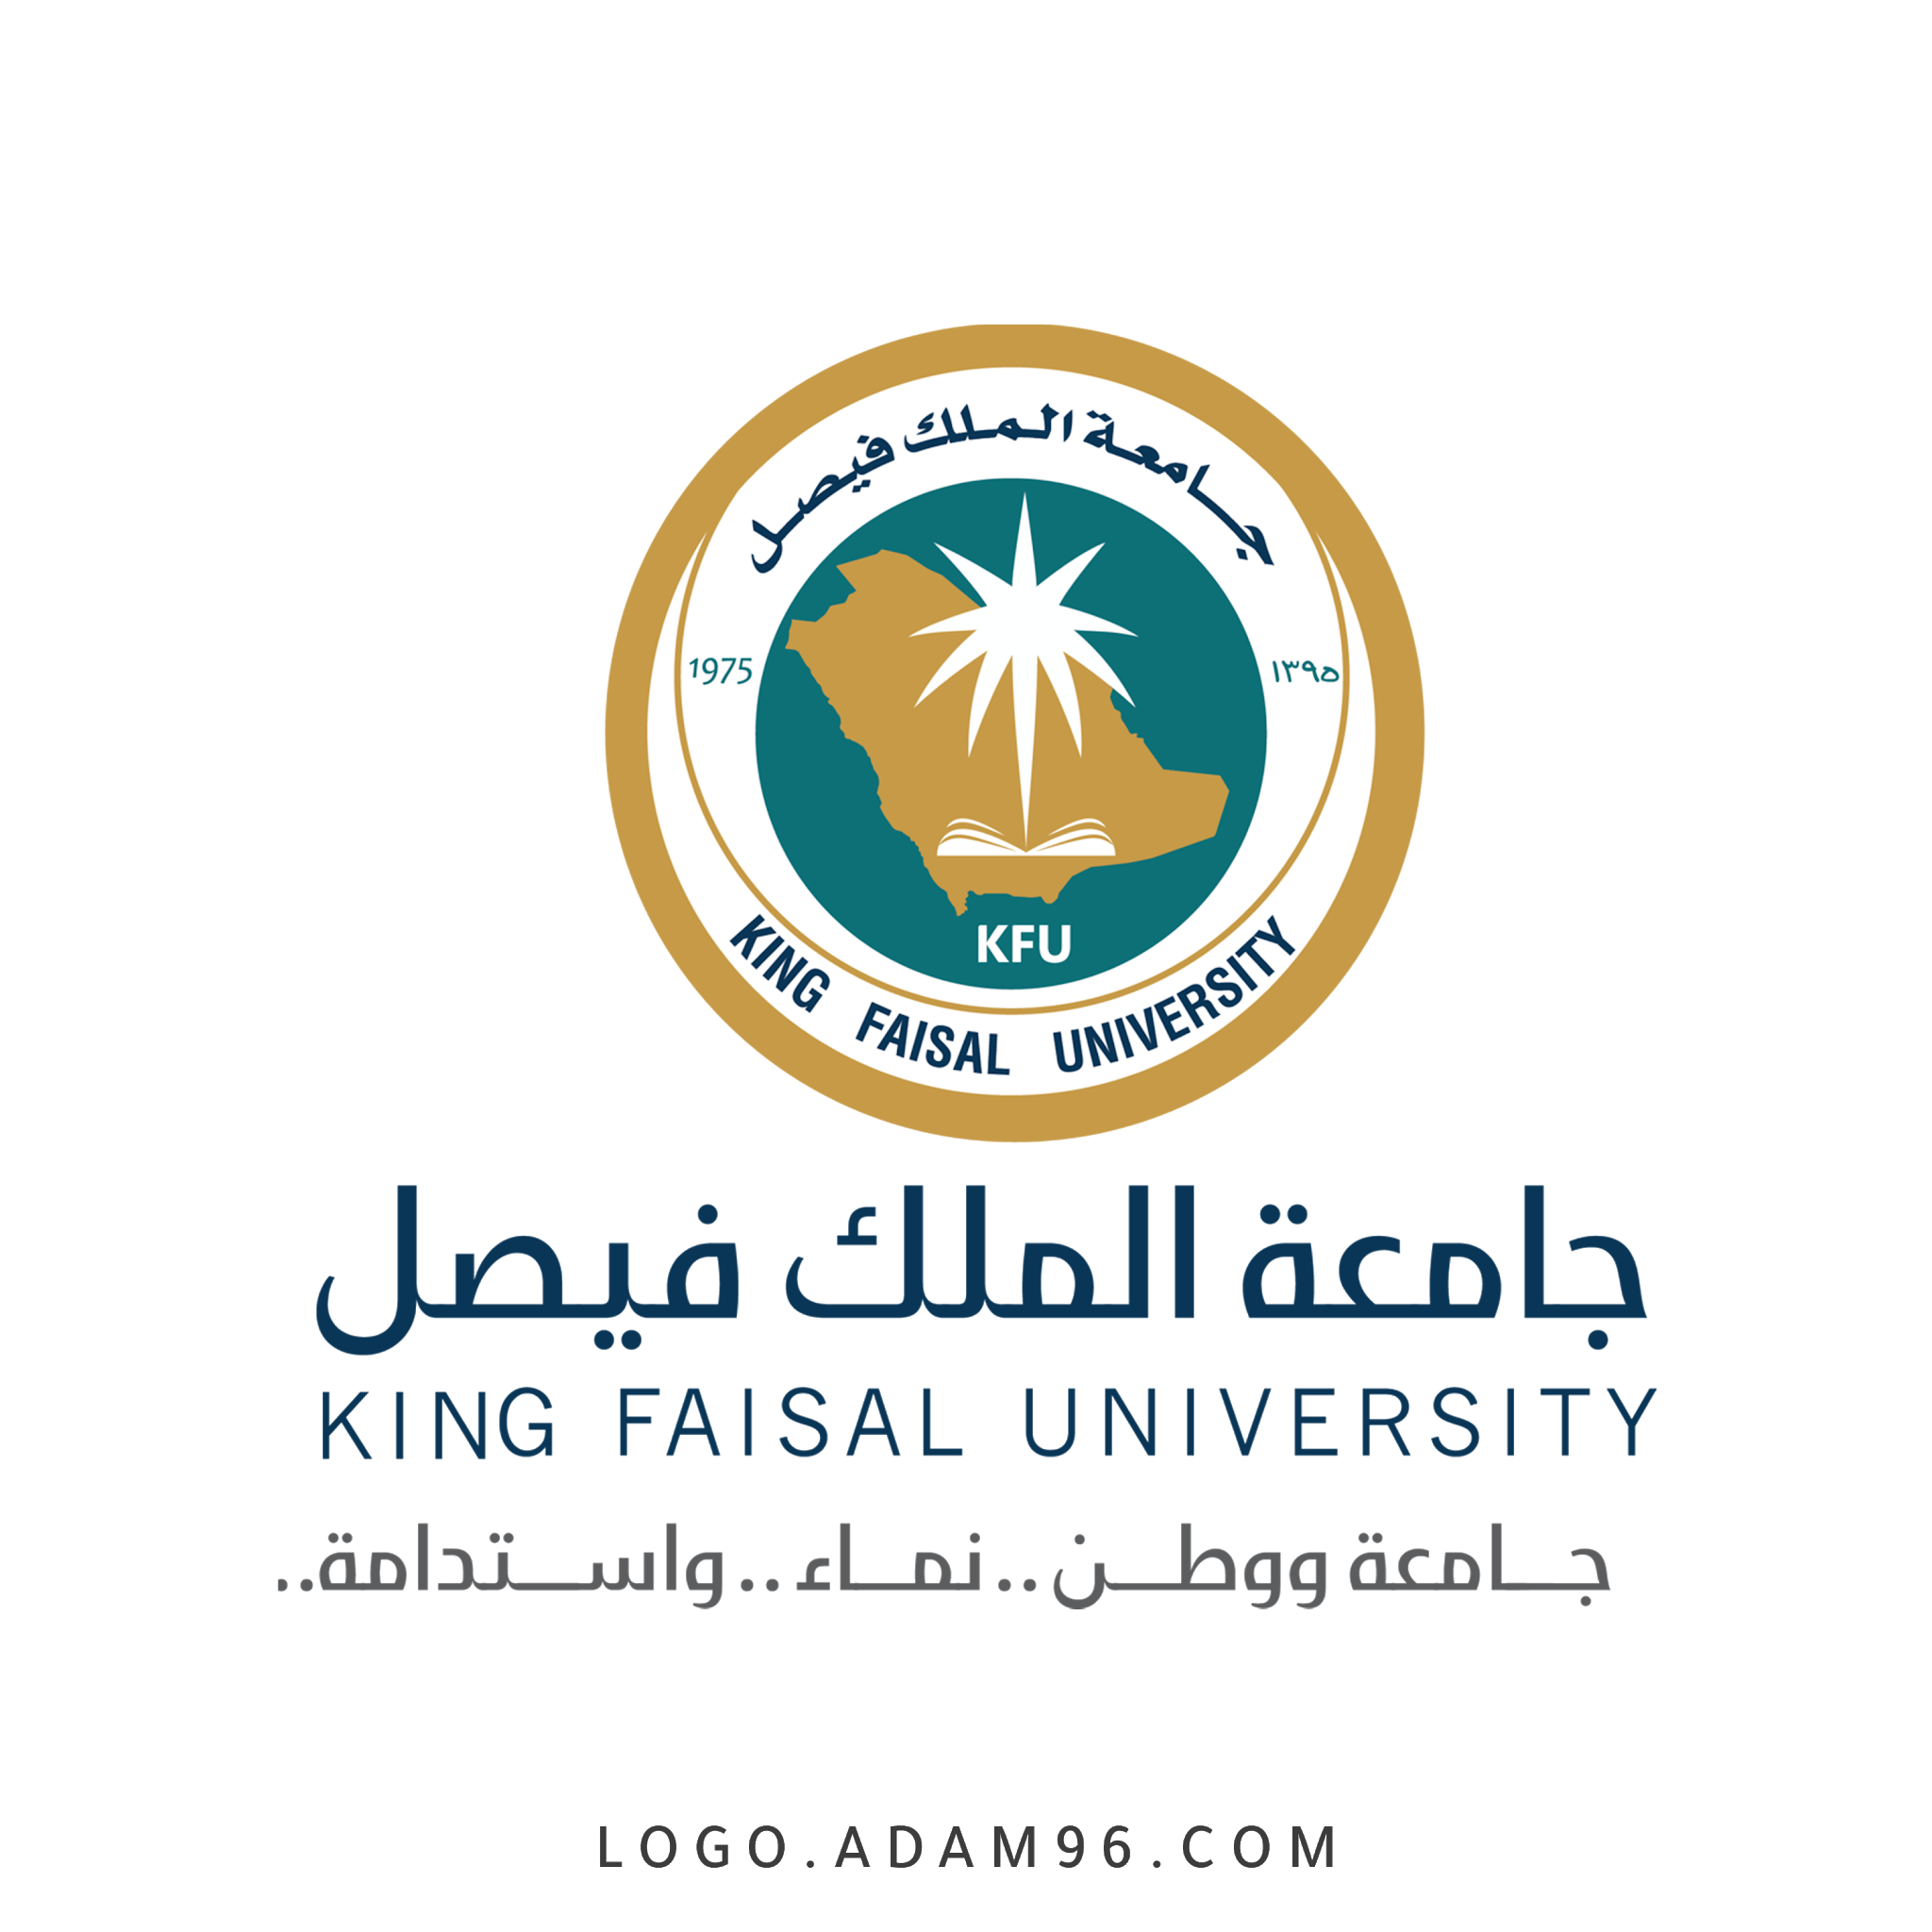 تحميل شعار جامعة الملك فيصل الرسمي لوجو عالي الجودة بصيغة PNG